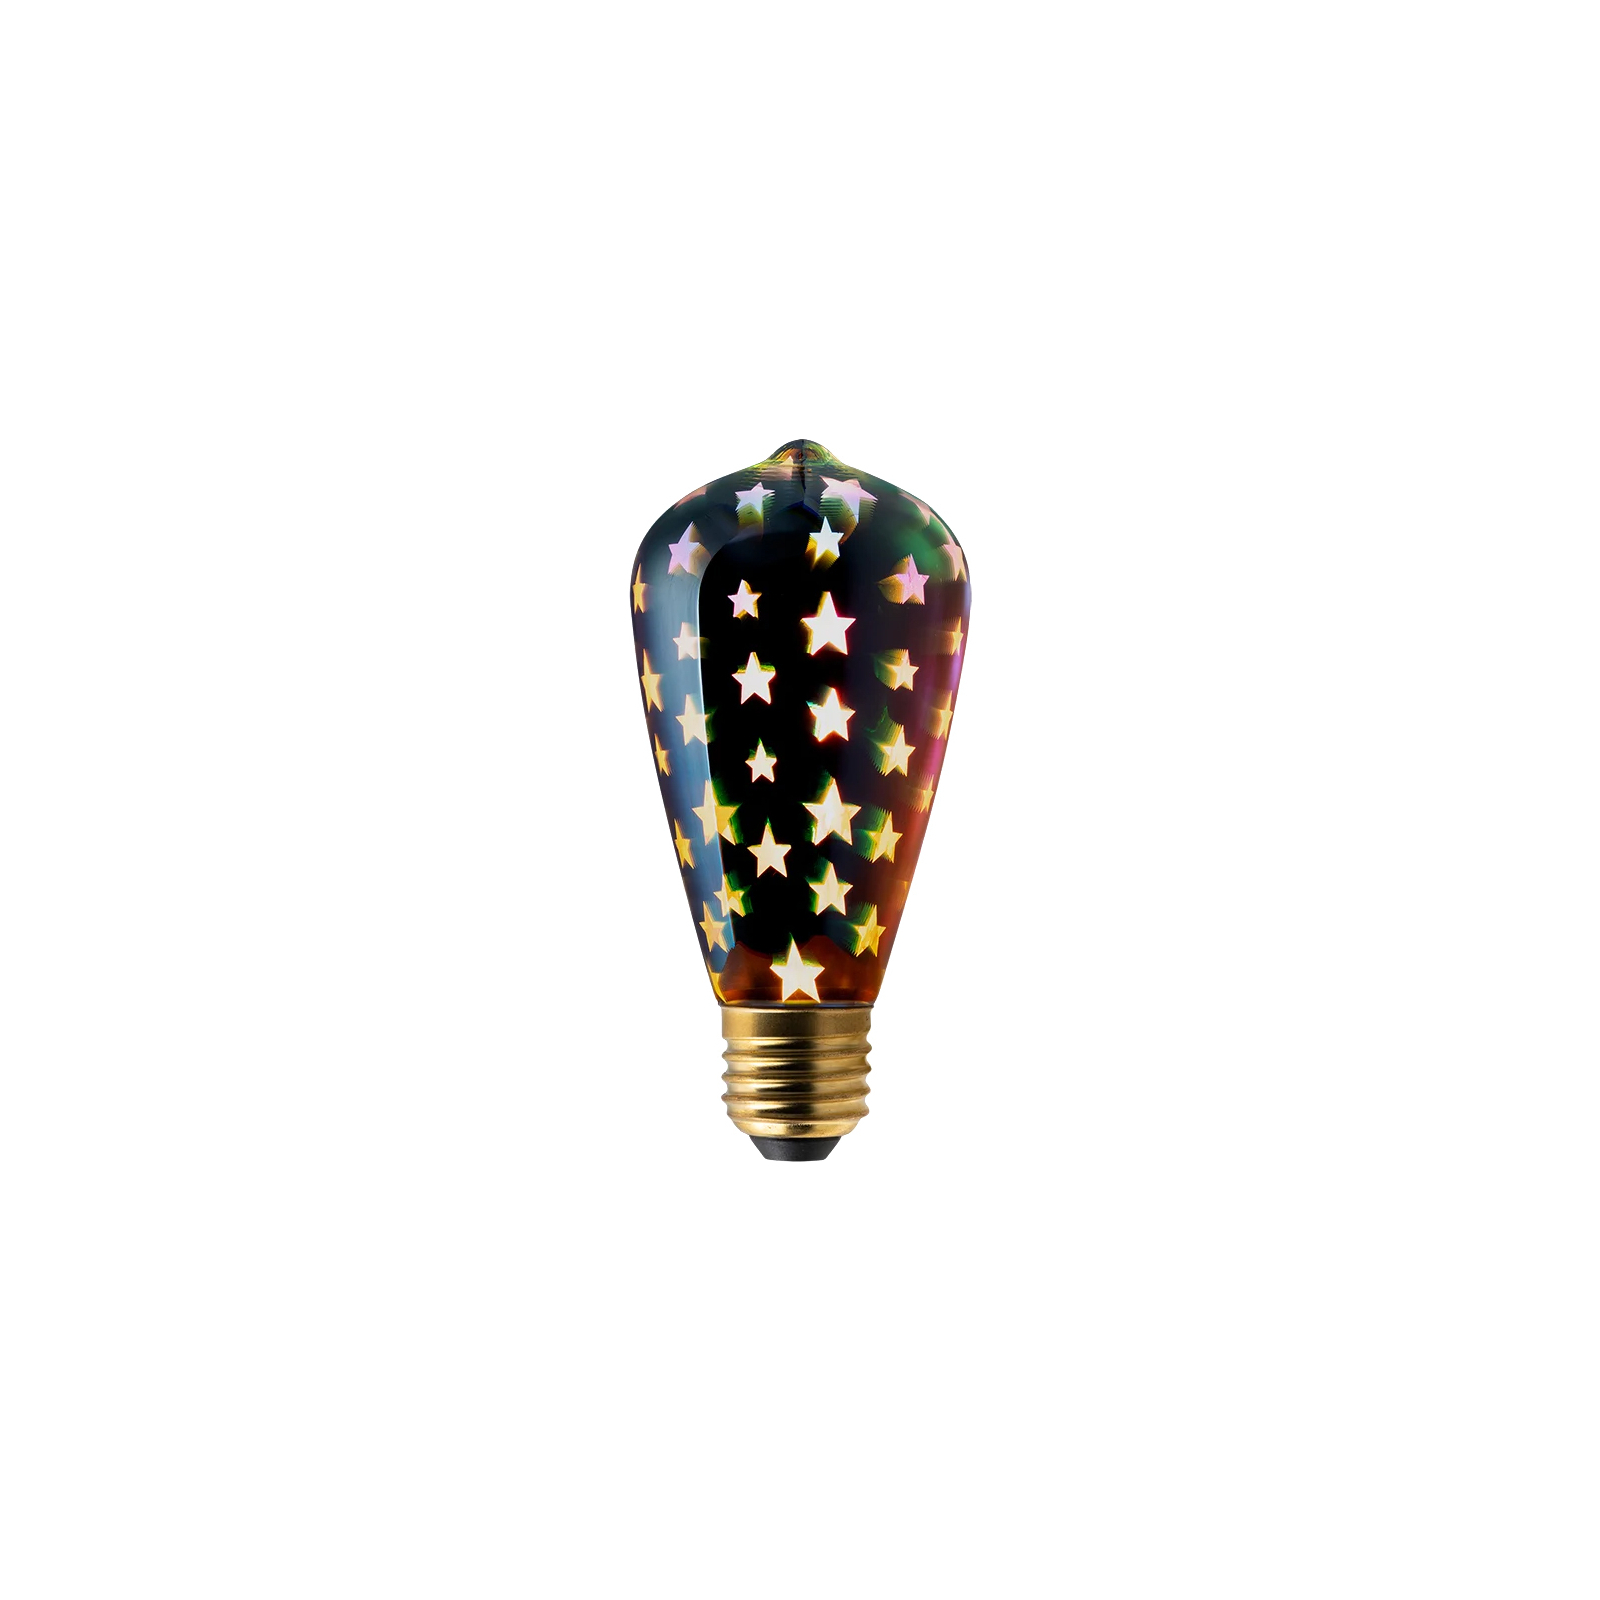 Розумна лампочка Momax SMART Fancy IoT LED Bulb - Star (IB7S)